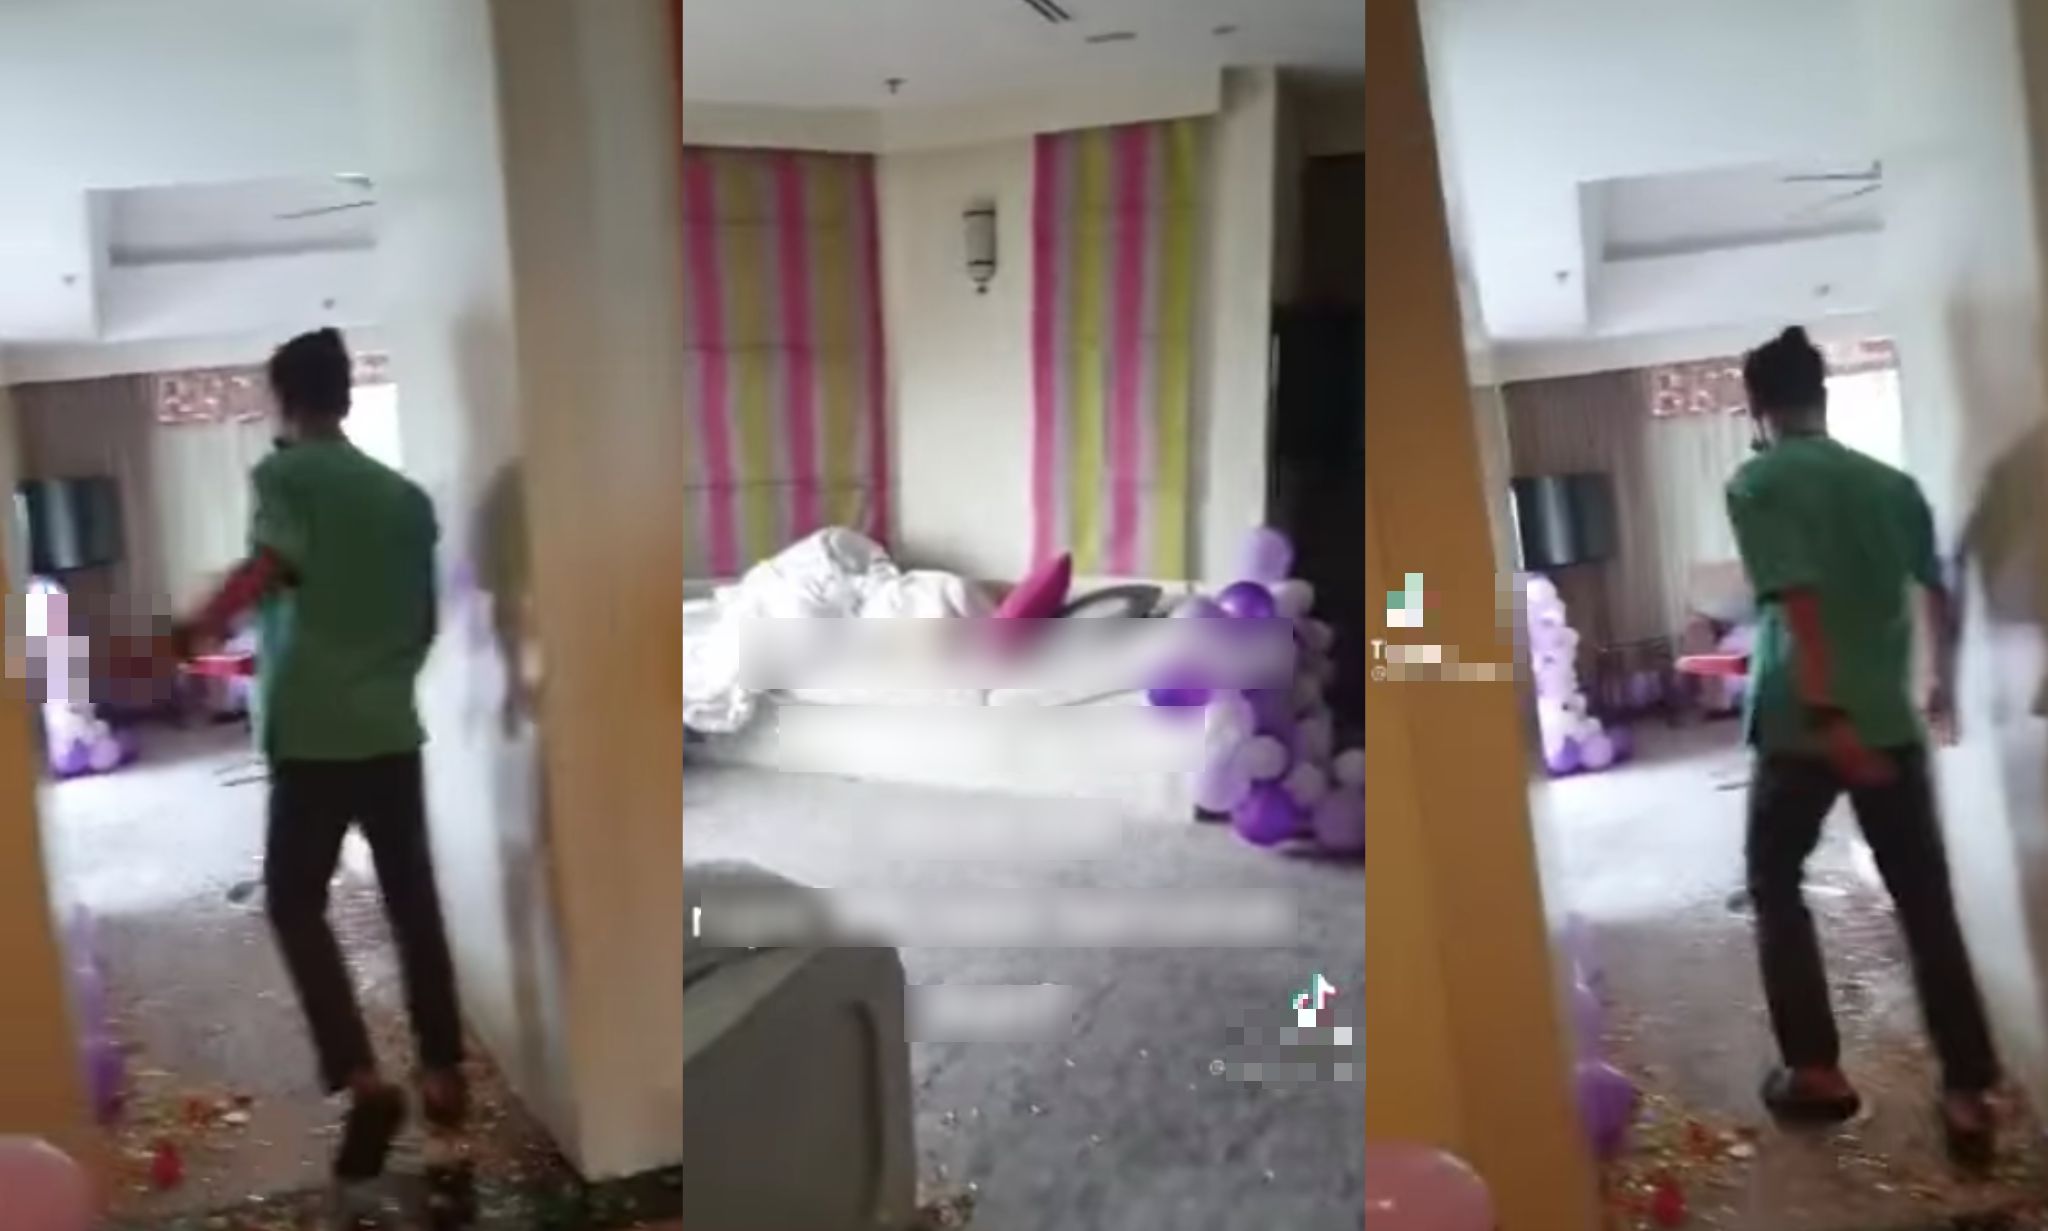 [VIDEO] Agak-Agaklah Nak Celebrate Party Dalam Hotel Pun